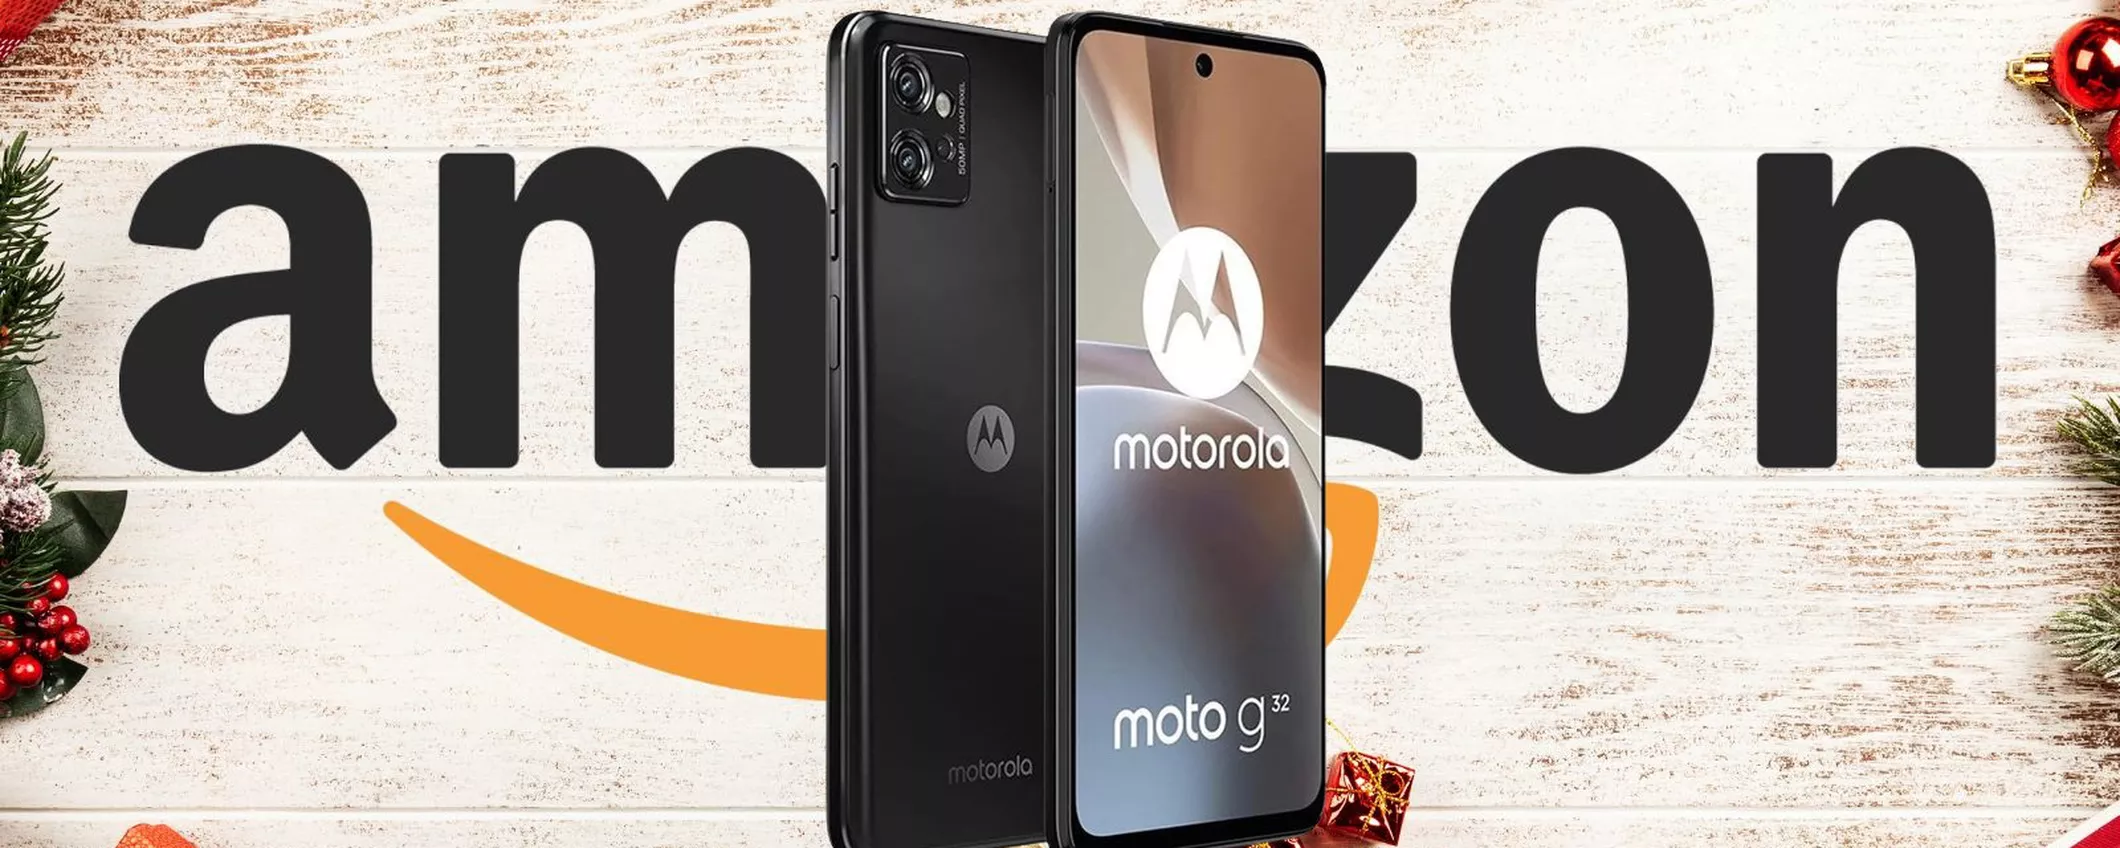 NATALE anticipato su Amazon: Motorola Moto G32 a MENO DI 100 EURO (-46%)